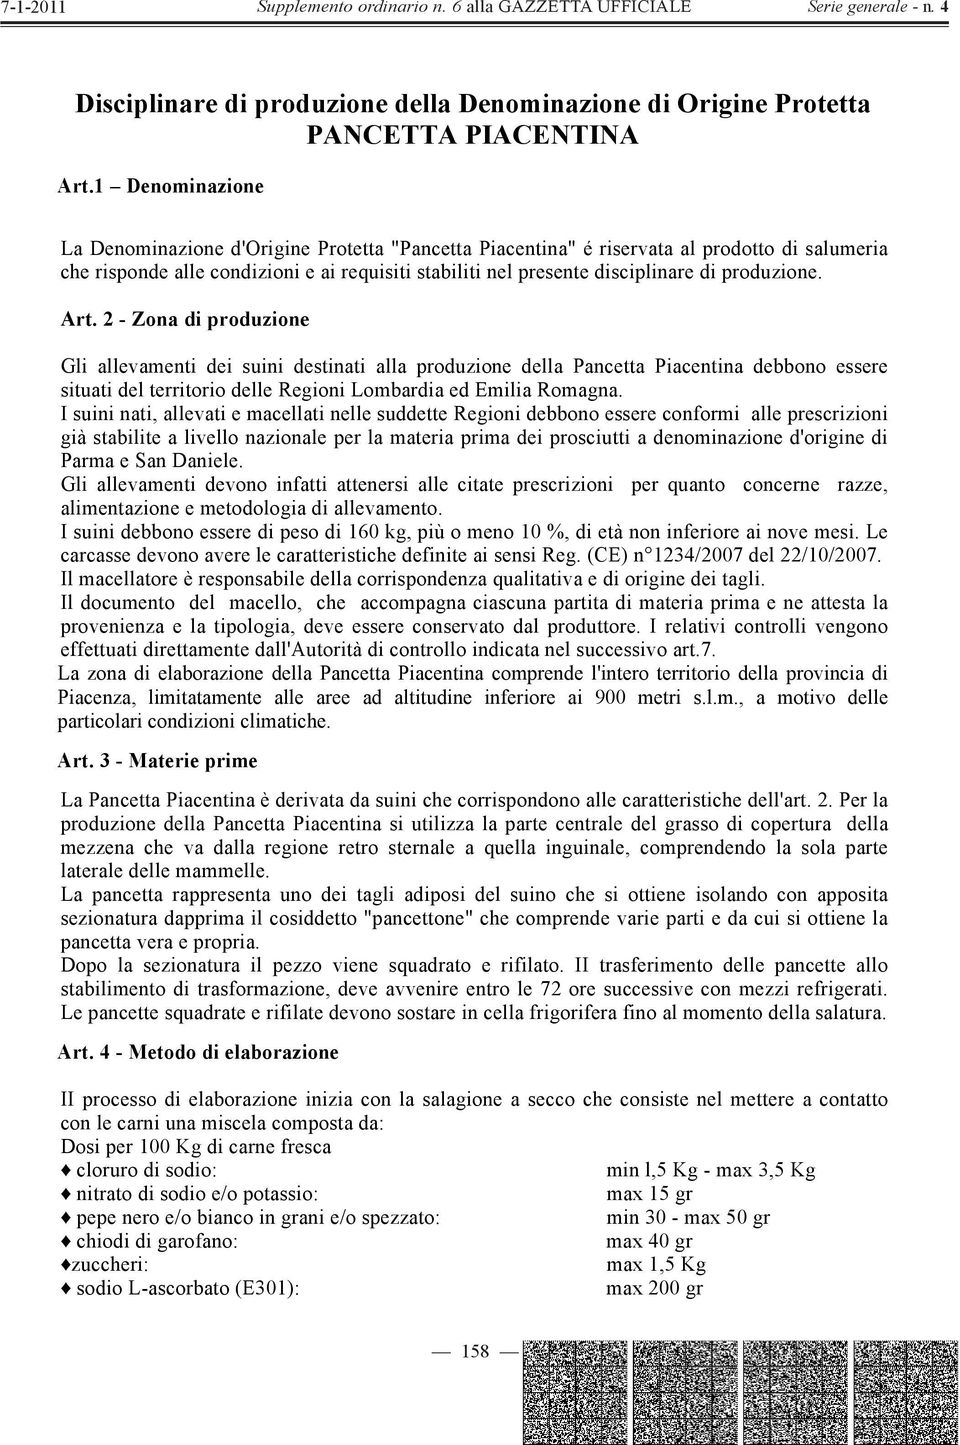 produzione. Art. 2 - Zona di produzione Gli allevamenti dei suini destinati alla produzione della Pancetta Piacentina debbono essere situati del territorio delle Regioni Lombardia ed Emilia Romagna.